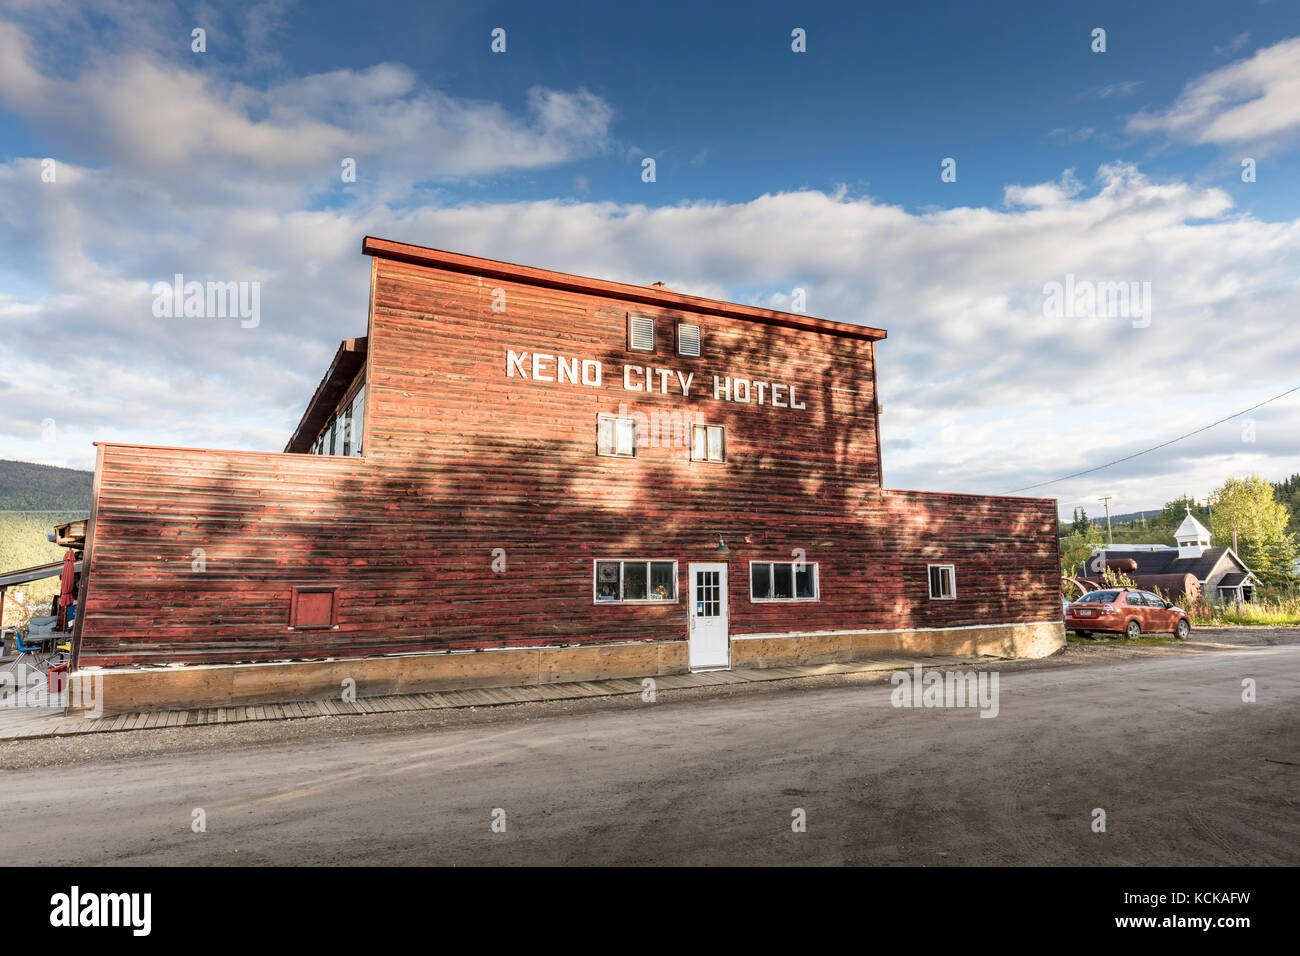 Keno city hotel, un hotel que es parte de los edificios históricos de la ciudad de keno Walking tour en la ciudad de keno, Yukon, Canadá Foto de stock